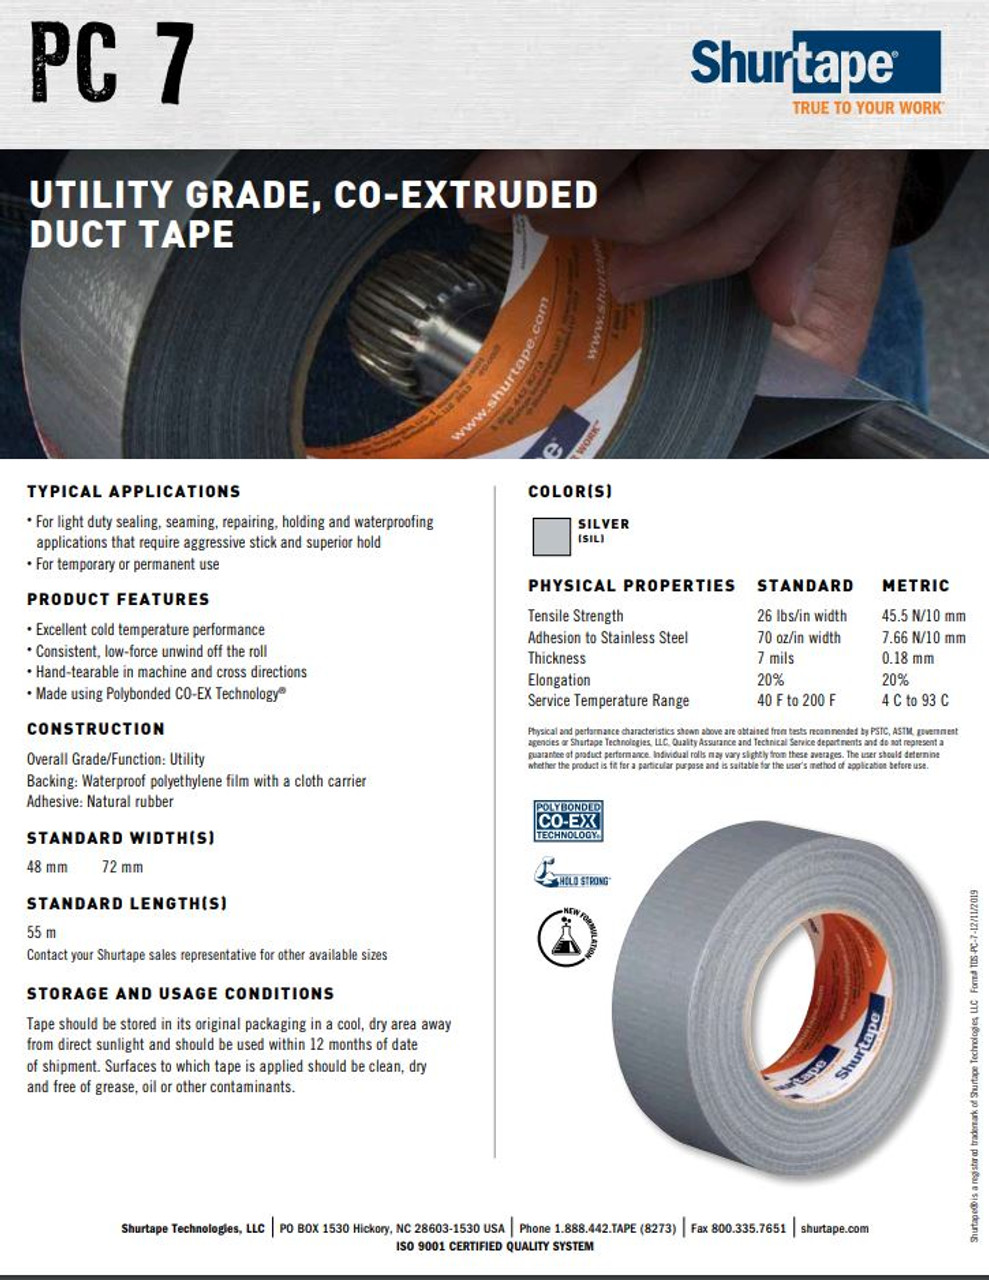 Product Images for Shurtape Utility Grade Masking